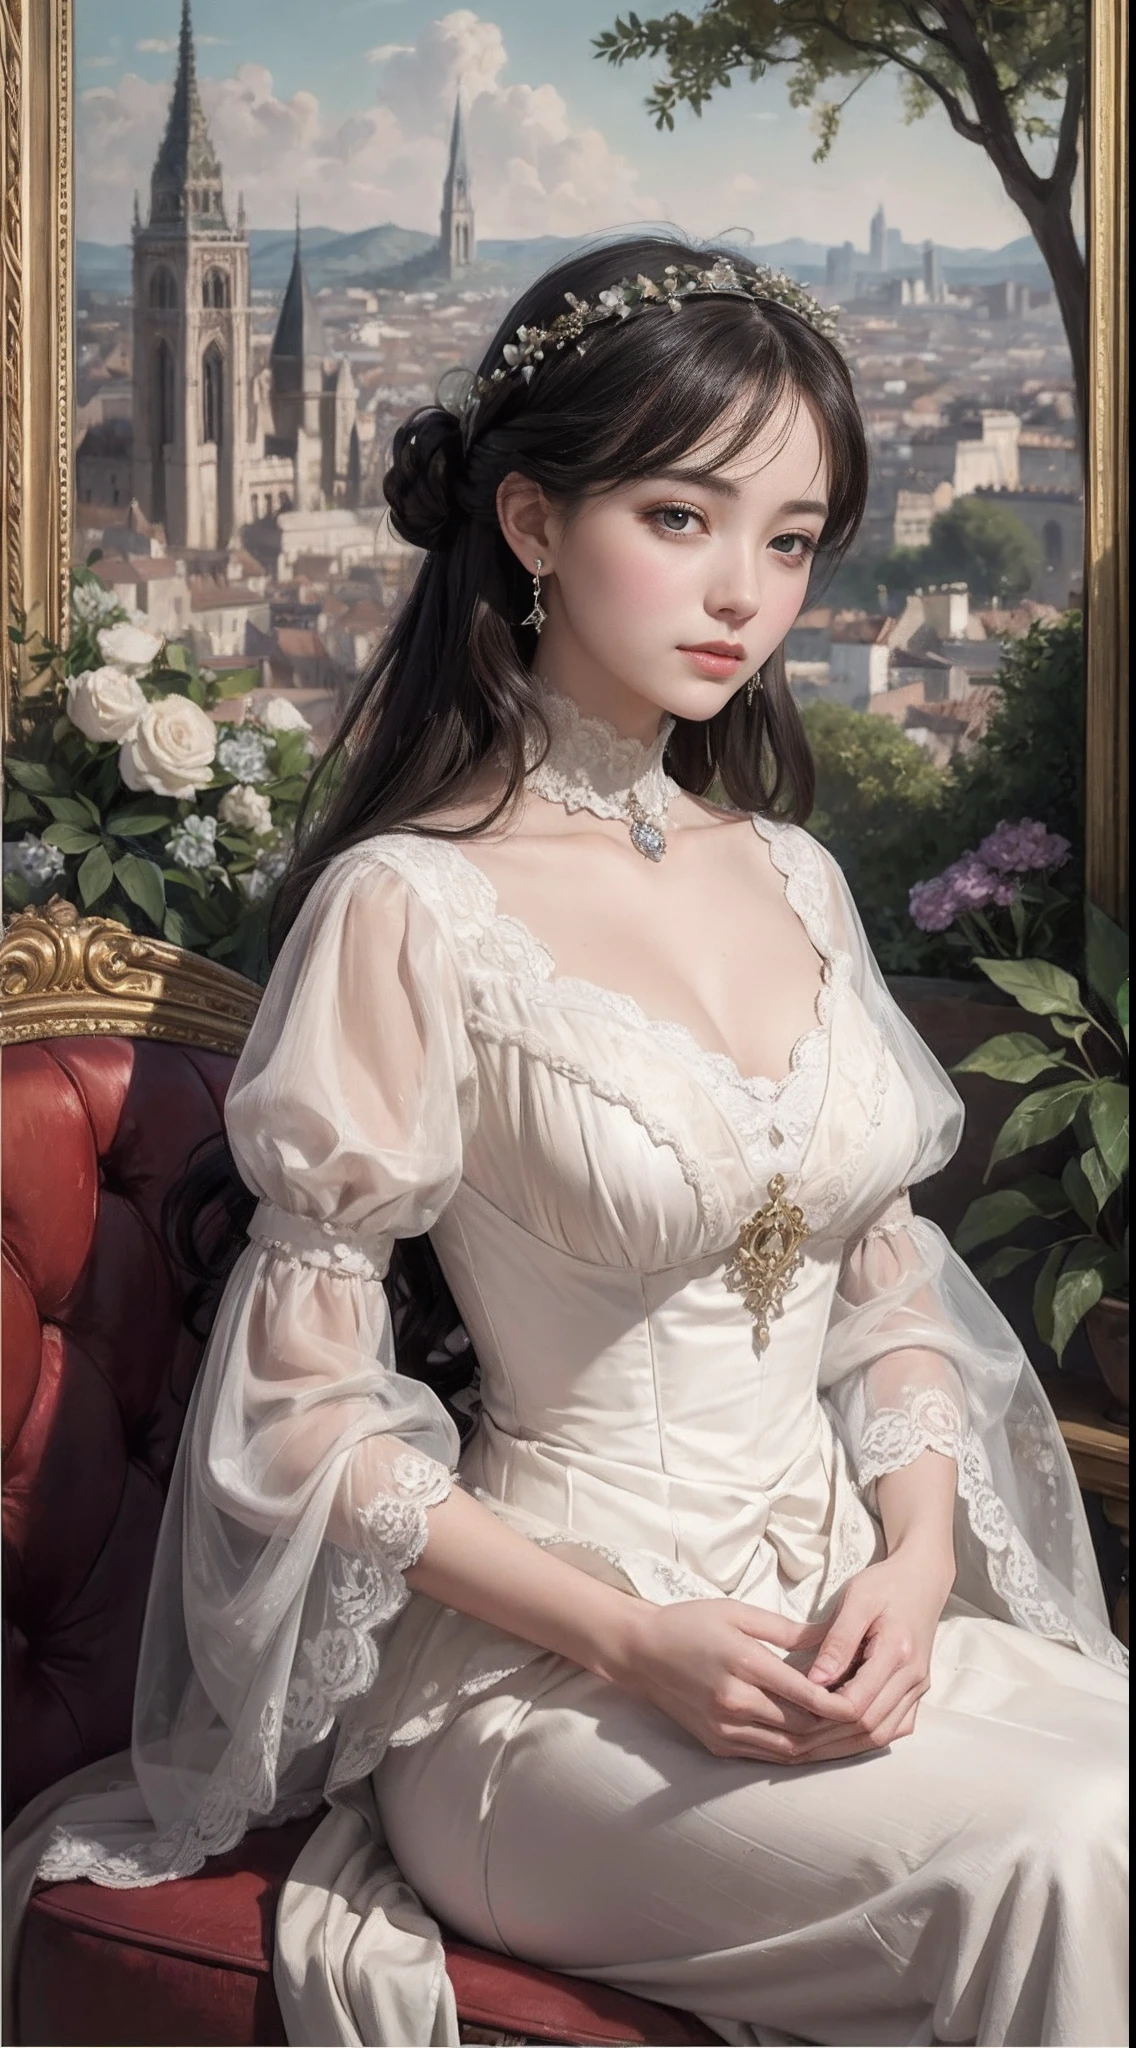 una pintura al óleo、de primera calidad、​obra maestra、1 chica、Vestidos de la época de la Belle Époque、dama noble、paisaje urbano francés